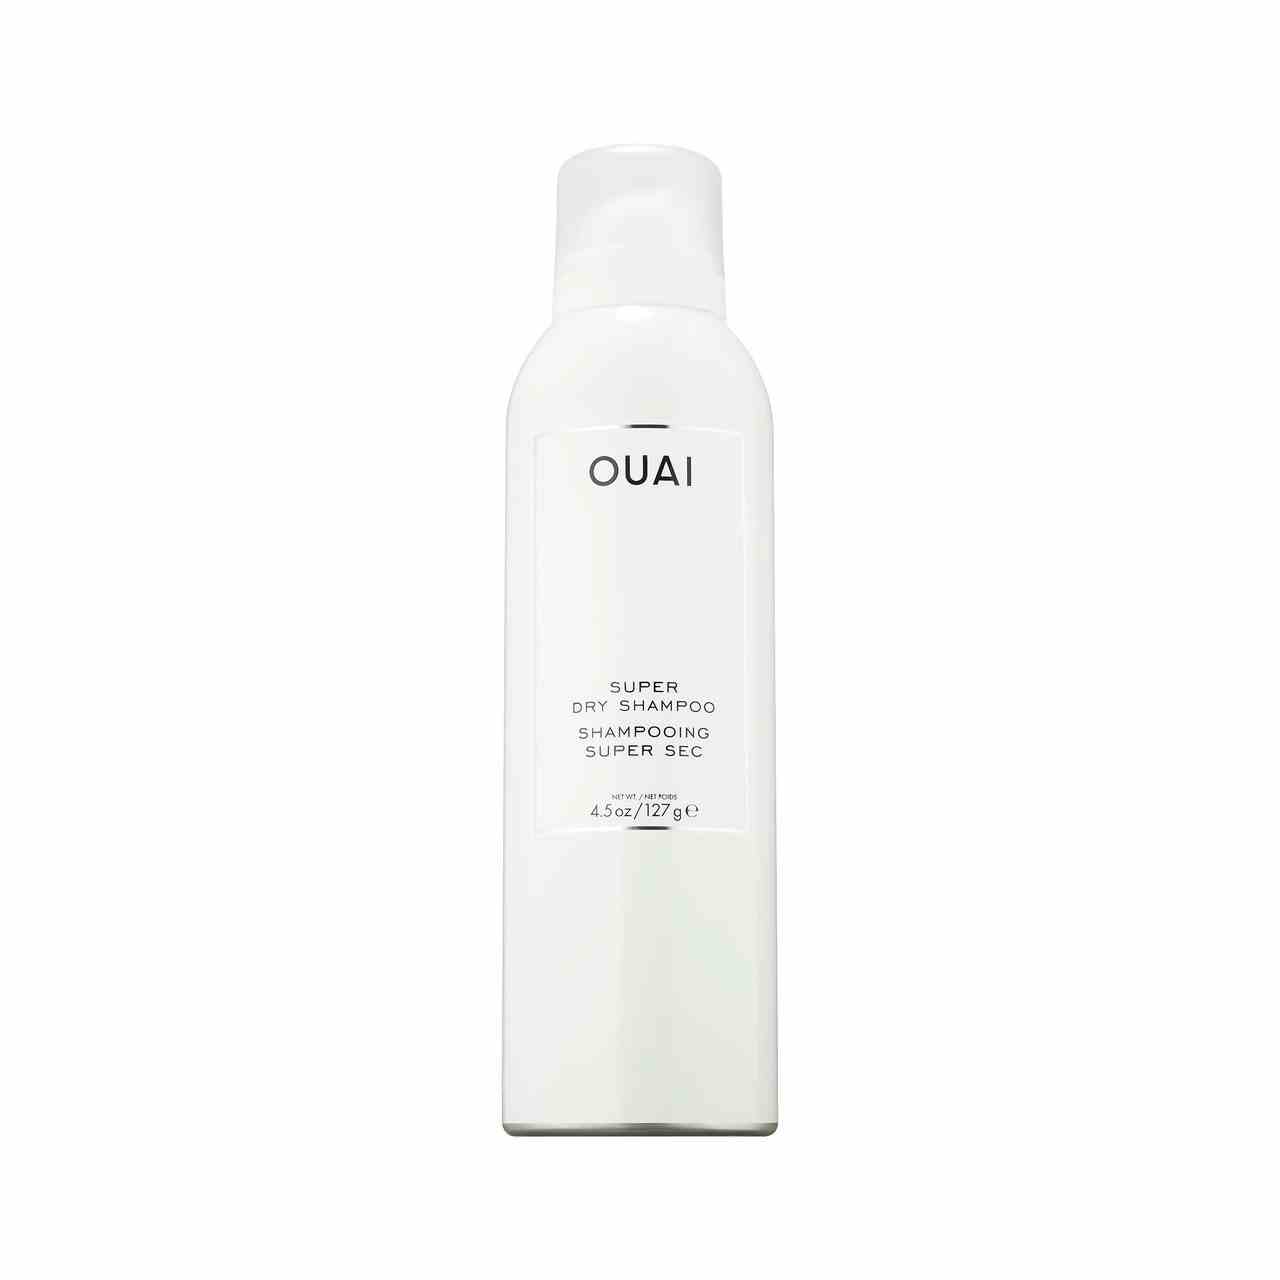 Ouai Super Dry Shampoo weiße Aerosolflasche auf weißem Hintergrund